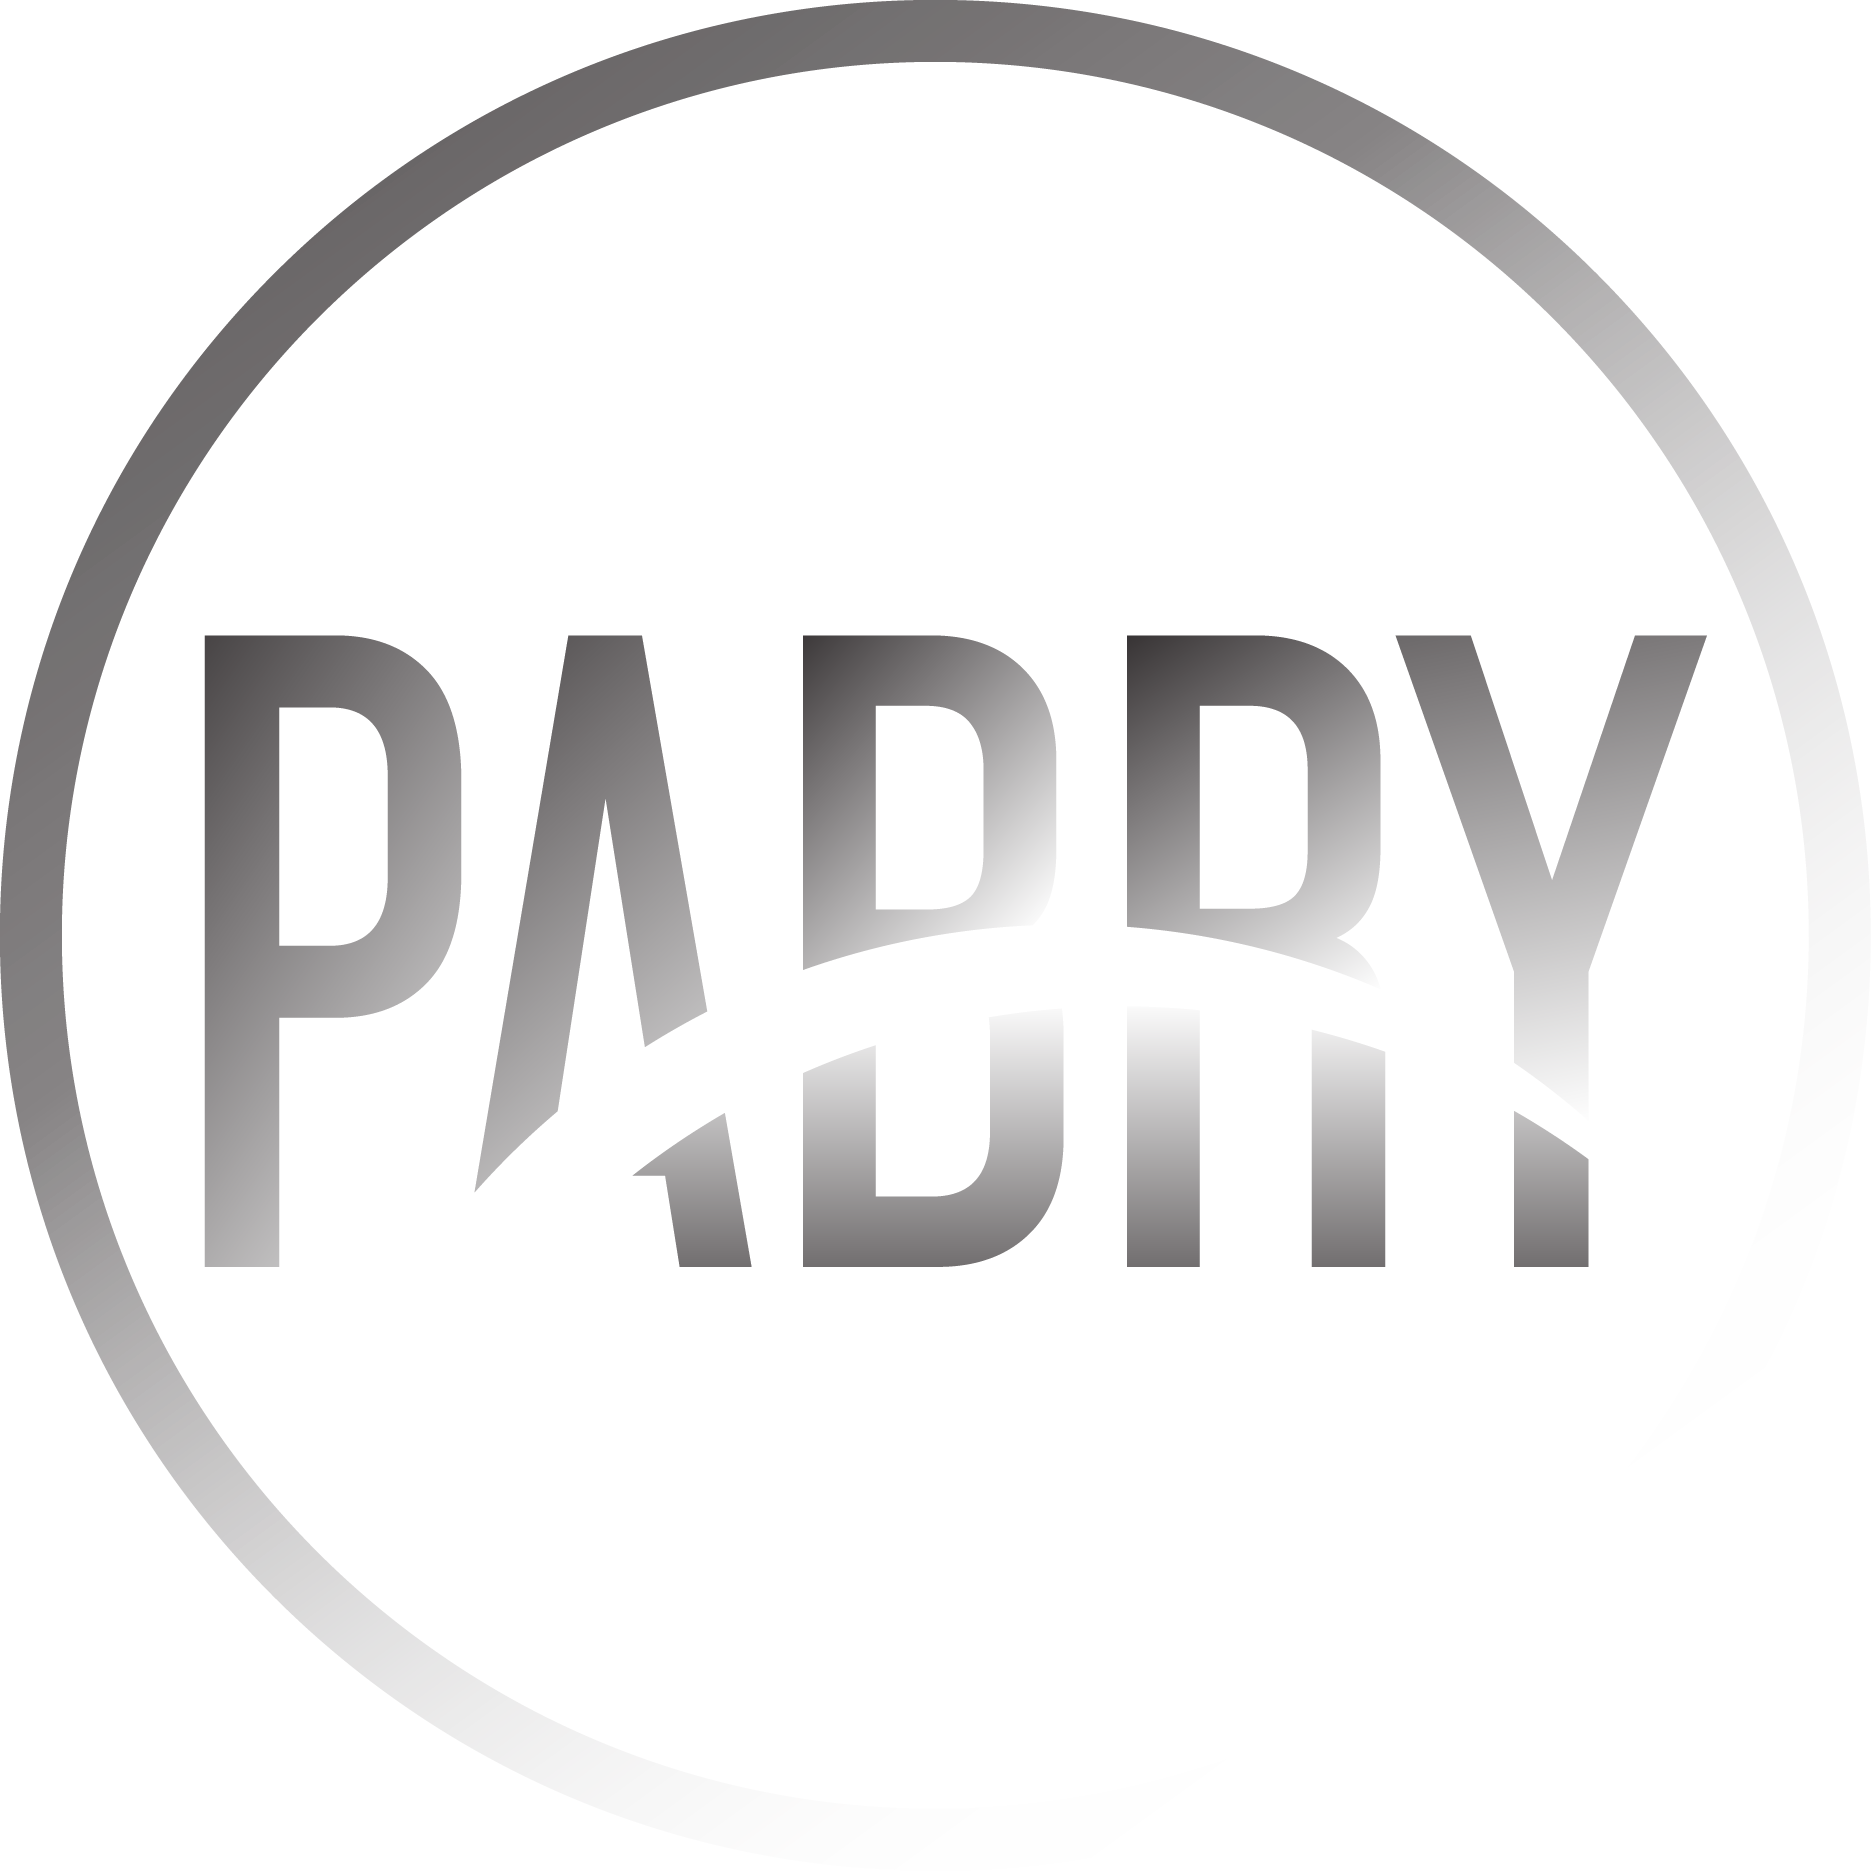 pabry.com